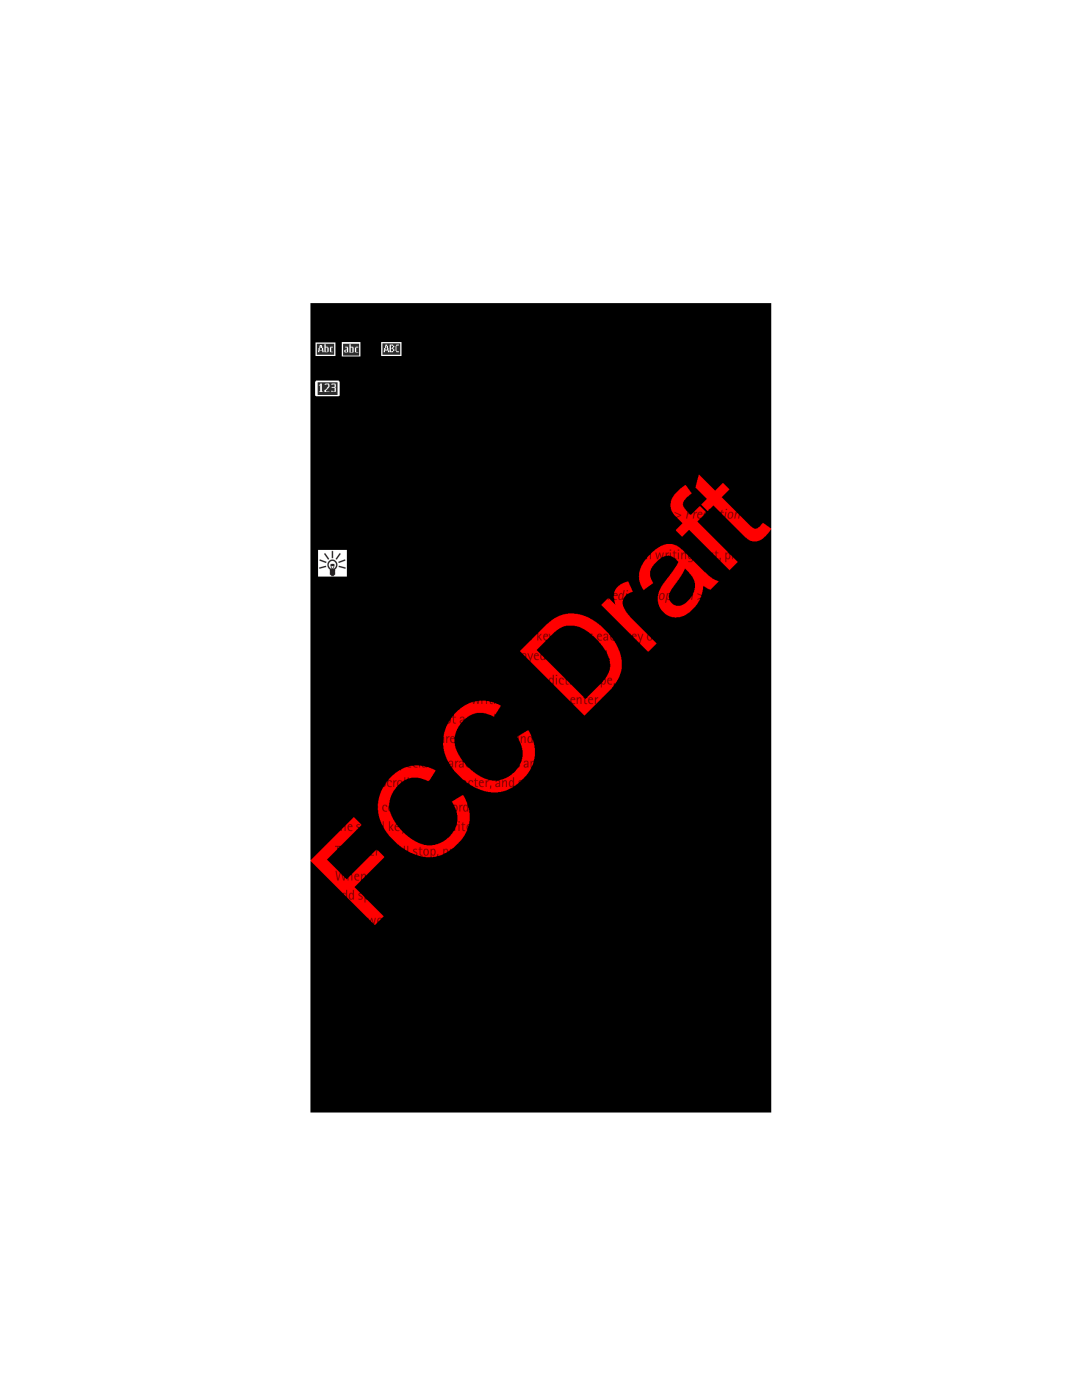 Nokia manual Predictive text input, Model 3555c - 23 April 